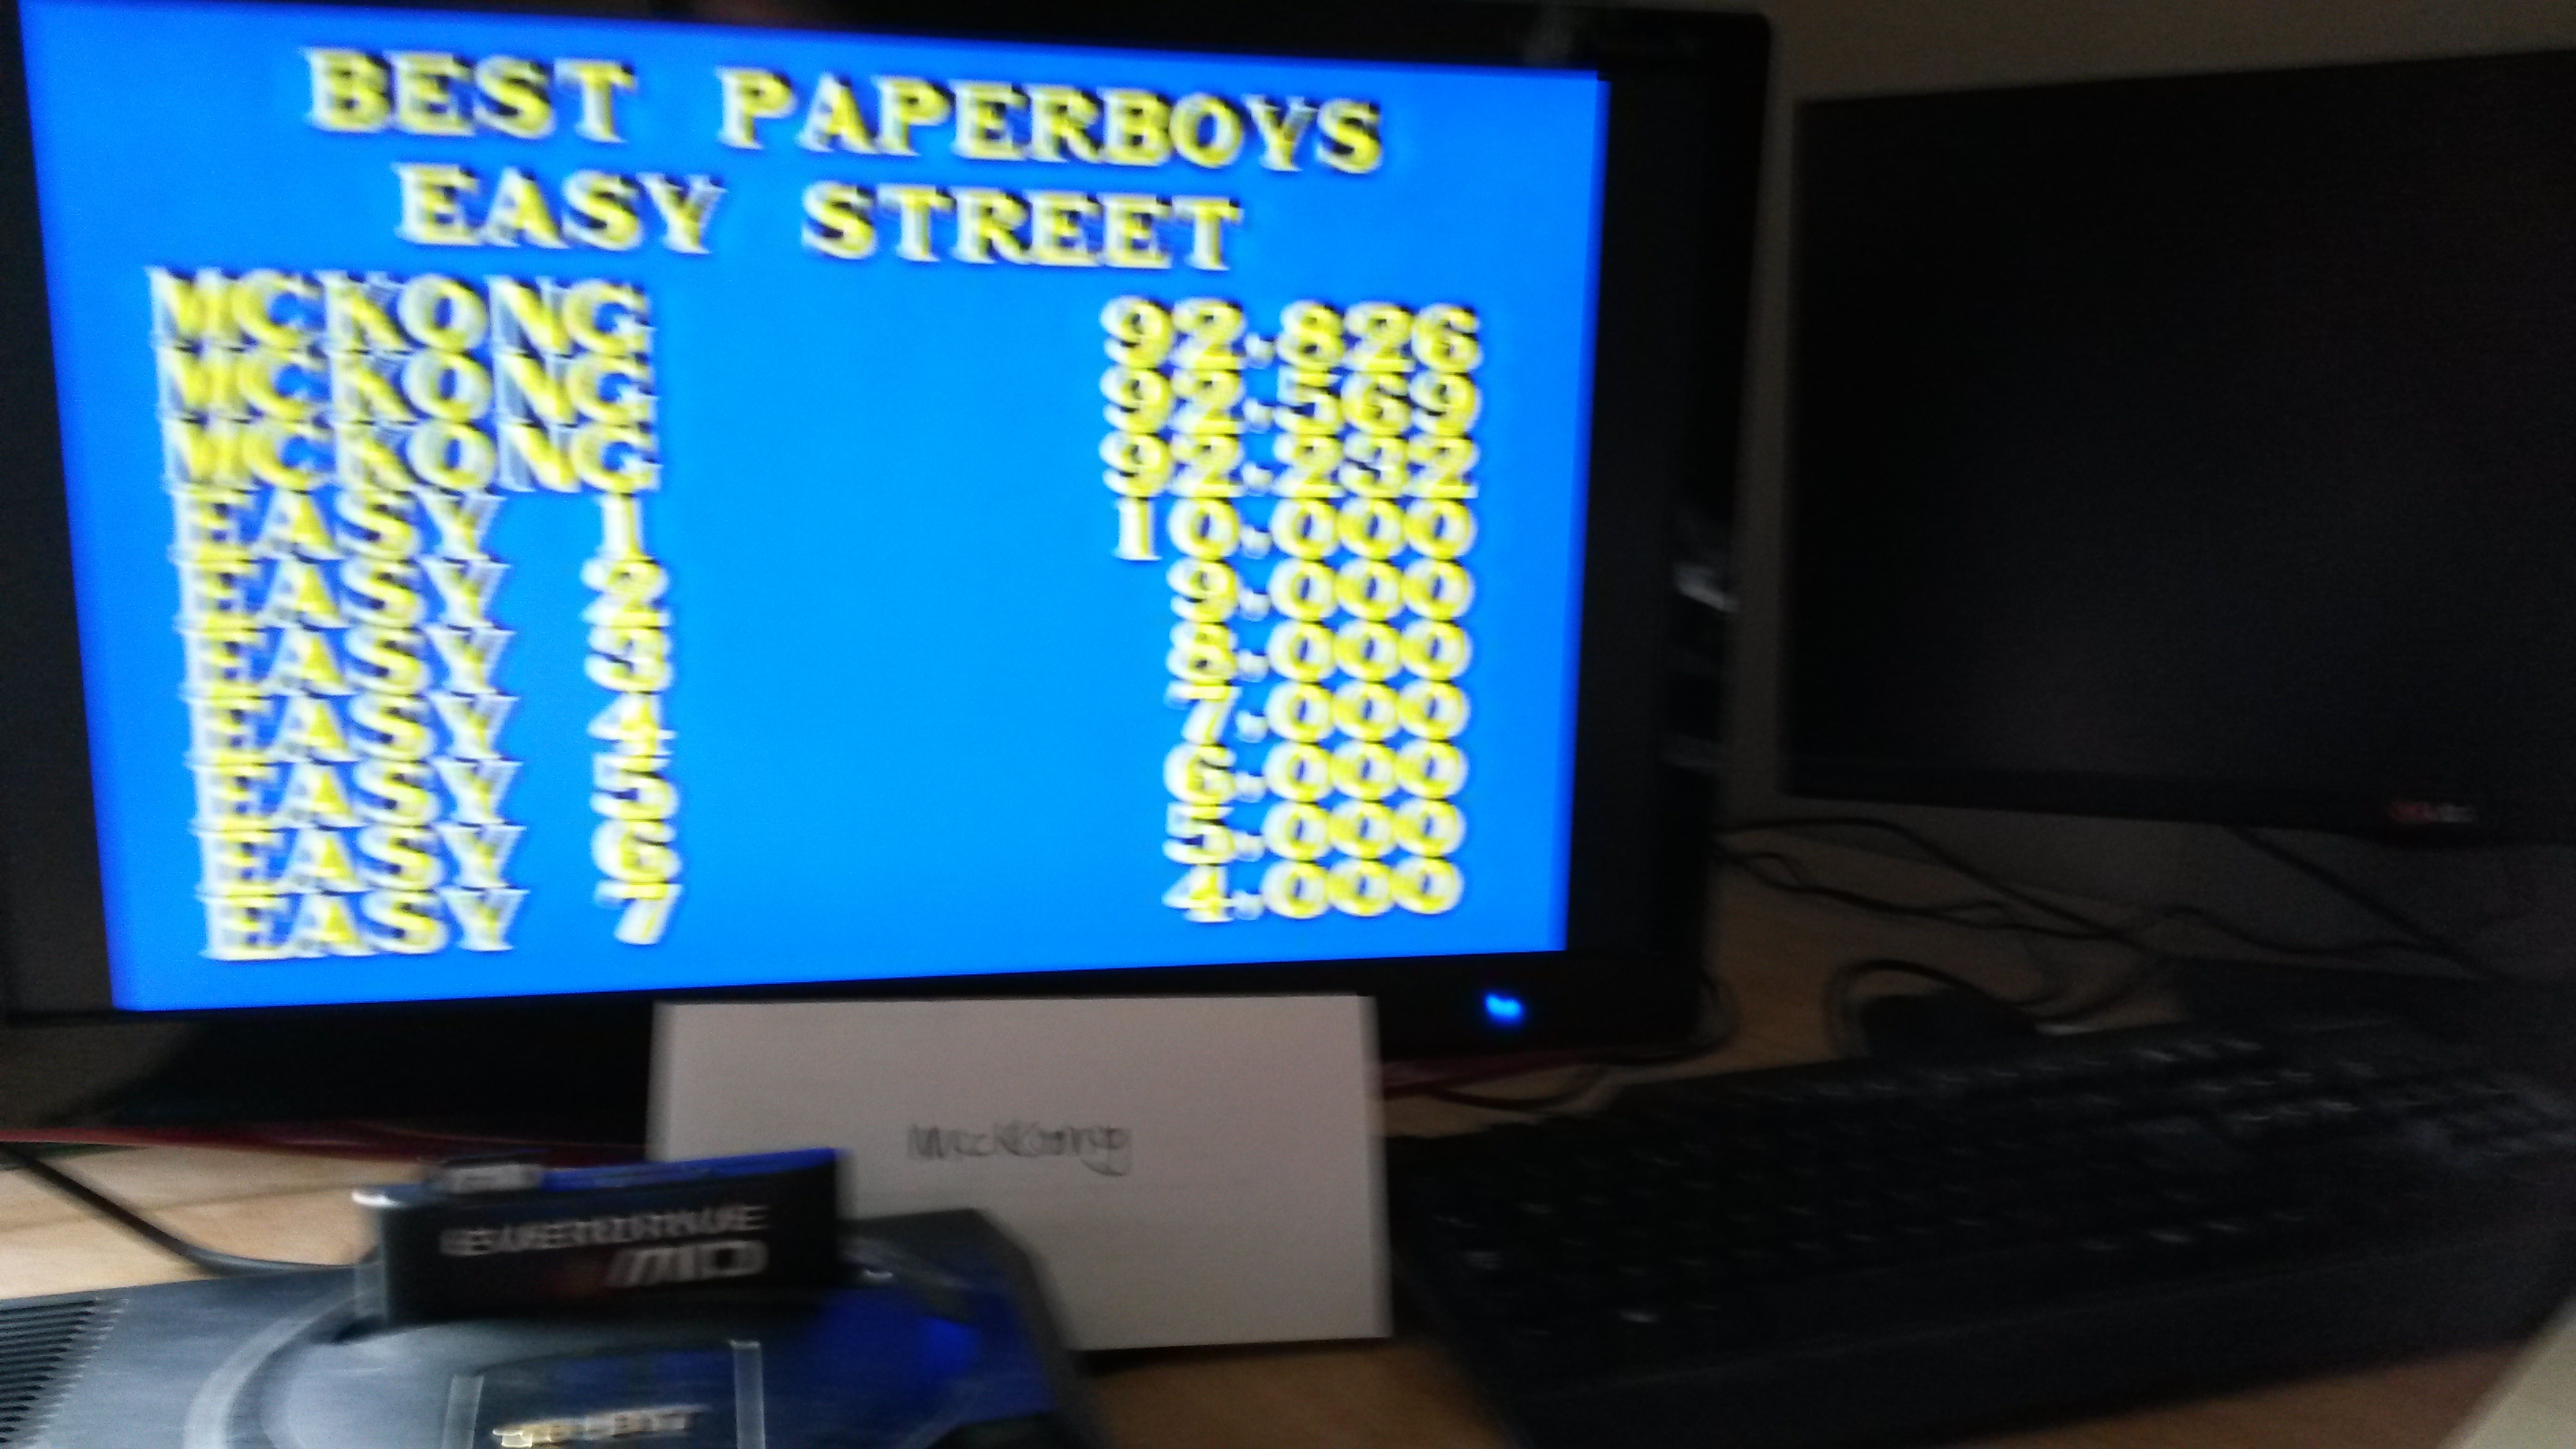 Paper Boy: Easy Street [Hard]